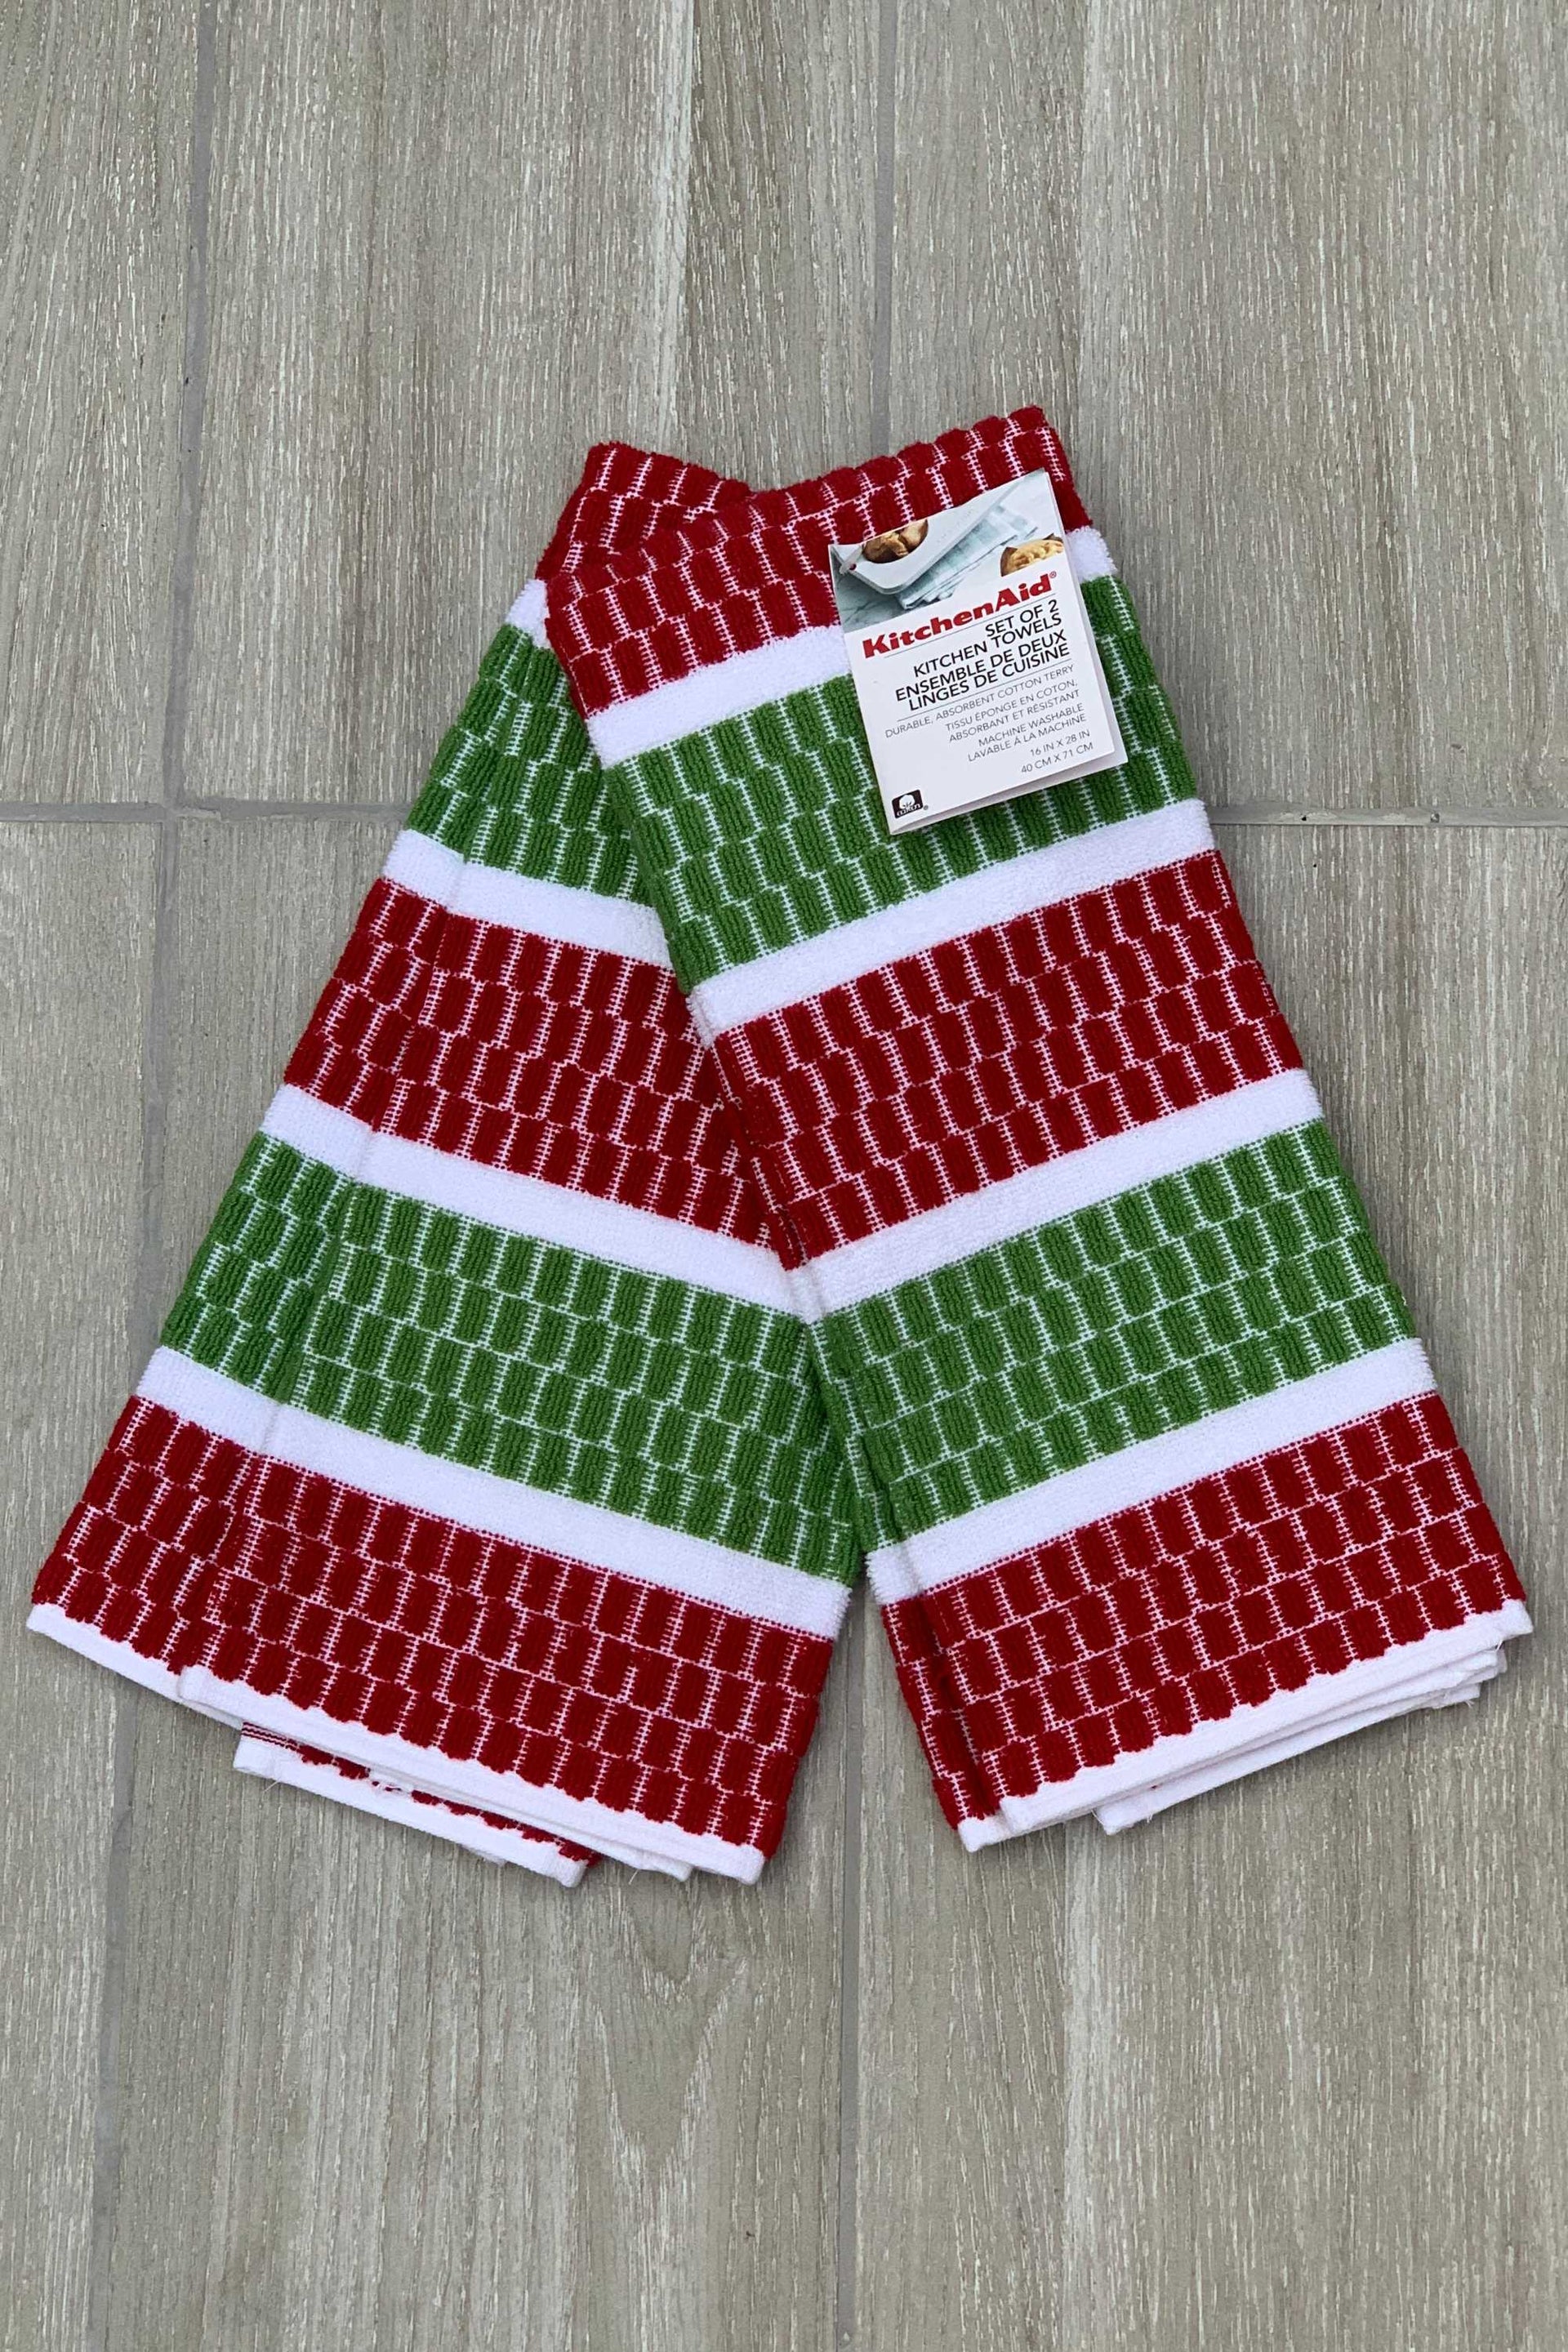 New KitchenAid Tea-Towels x2 Red and Bright Green – Wild Haggis Direct